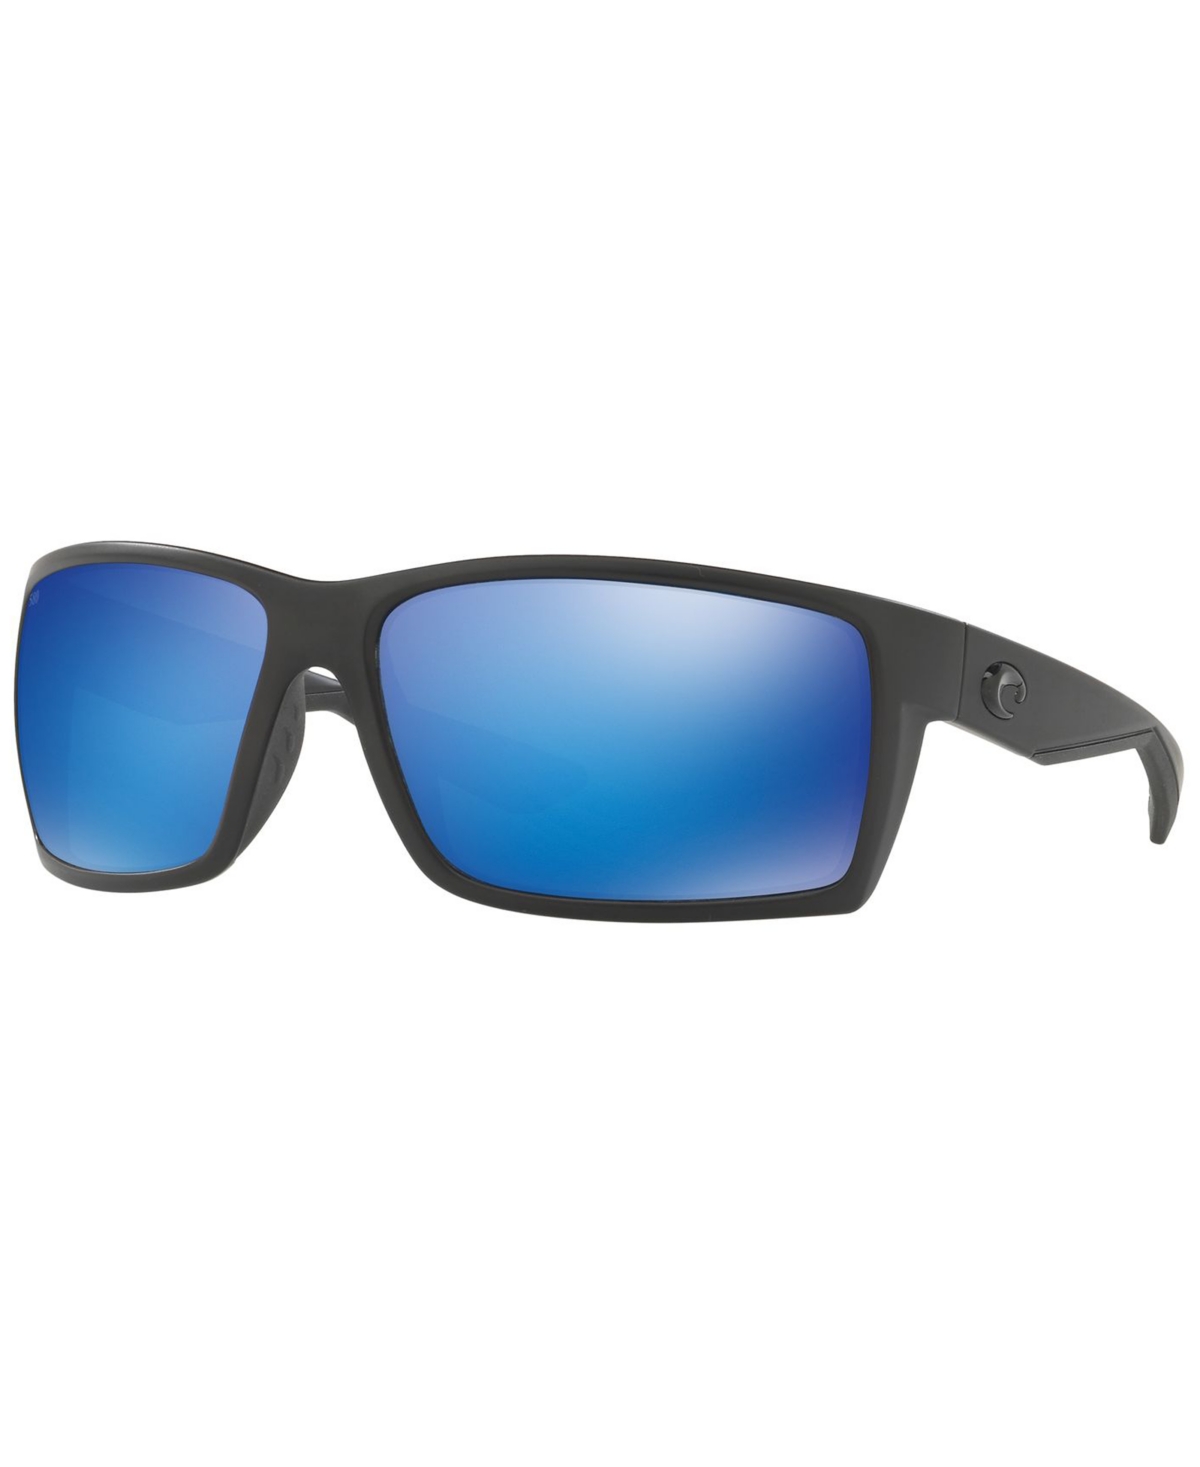 Costa Del Mar Polarized Sunglasses, Reefton 64